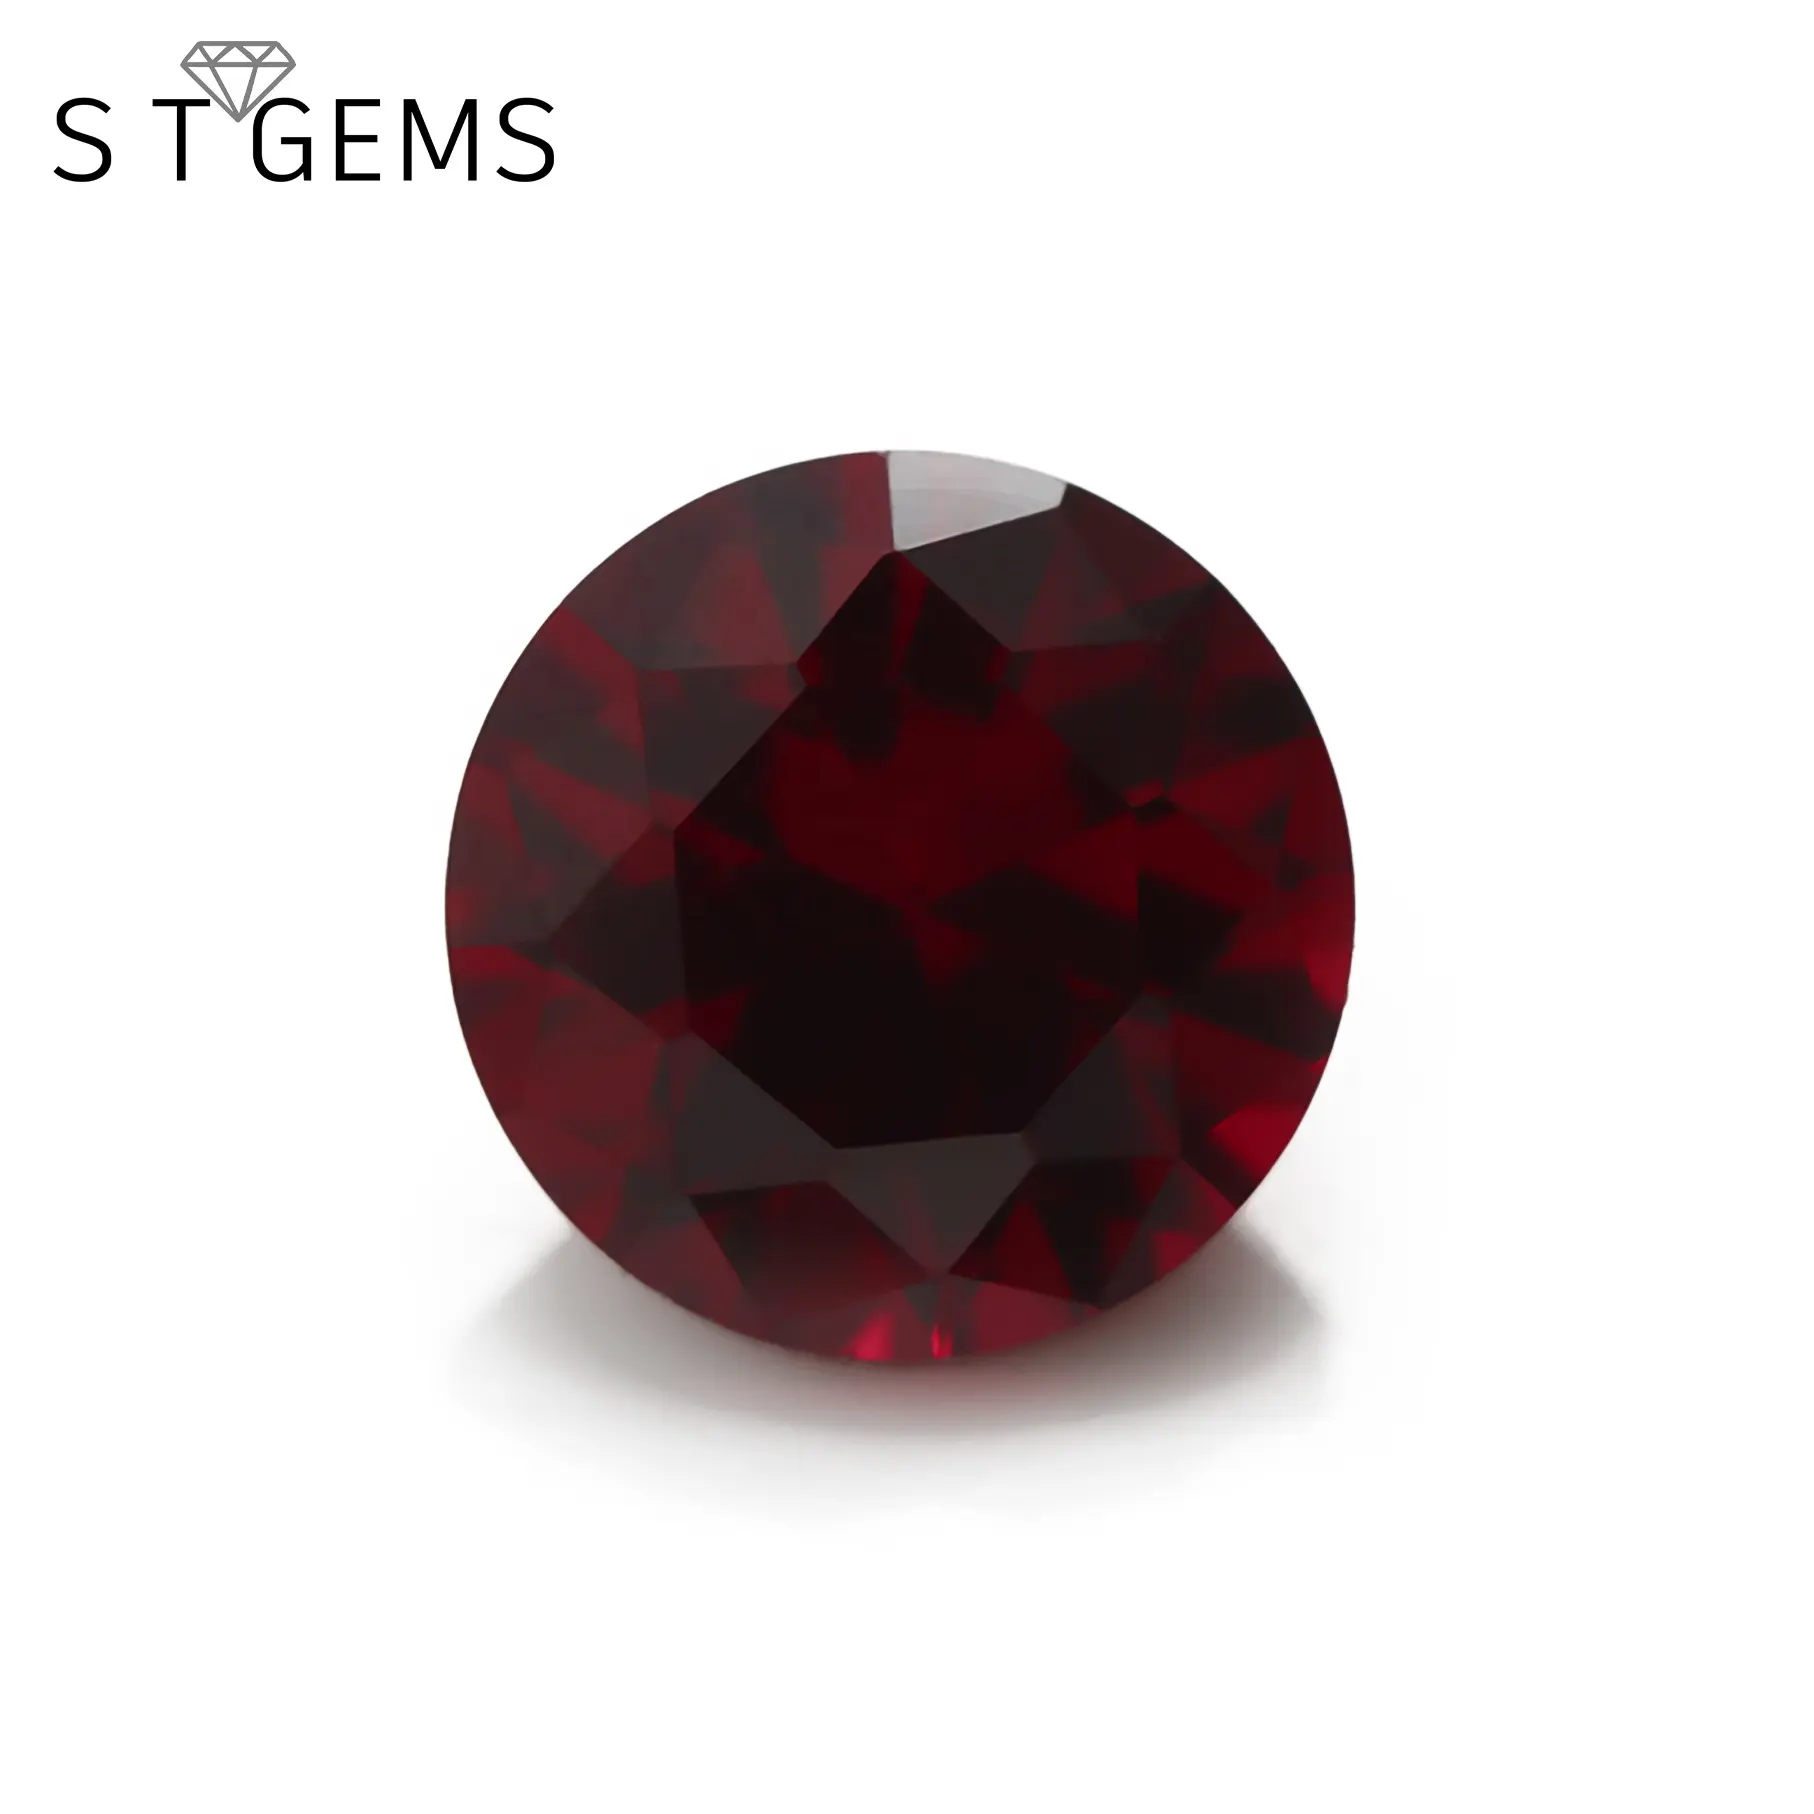 Prezzi della pietra sintetica del rubino sintetico della pietra preziosa del corindone rosso scuro Ruby8 # del taglio rotondo della cina da vendere